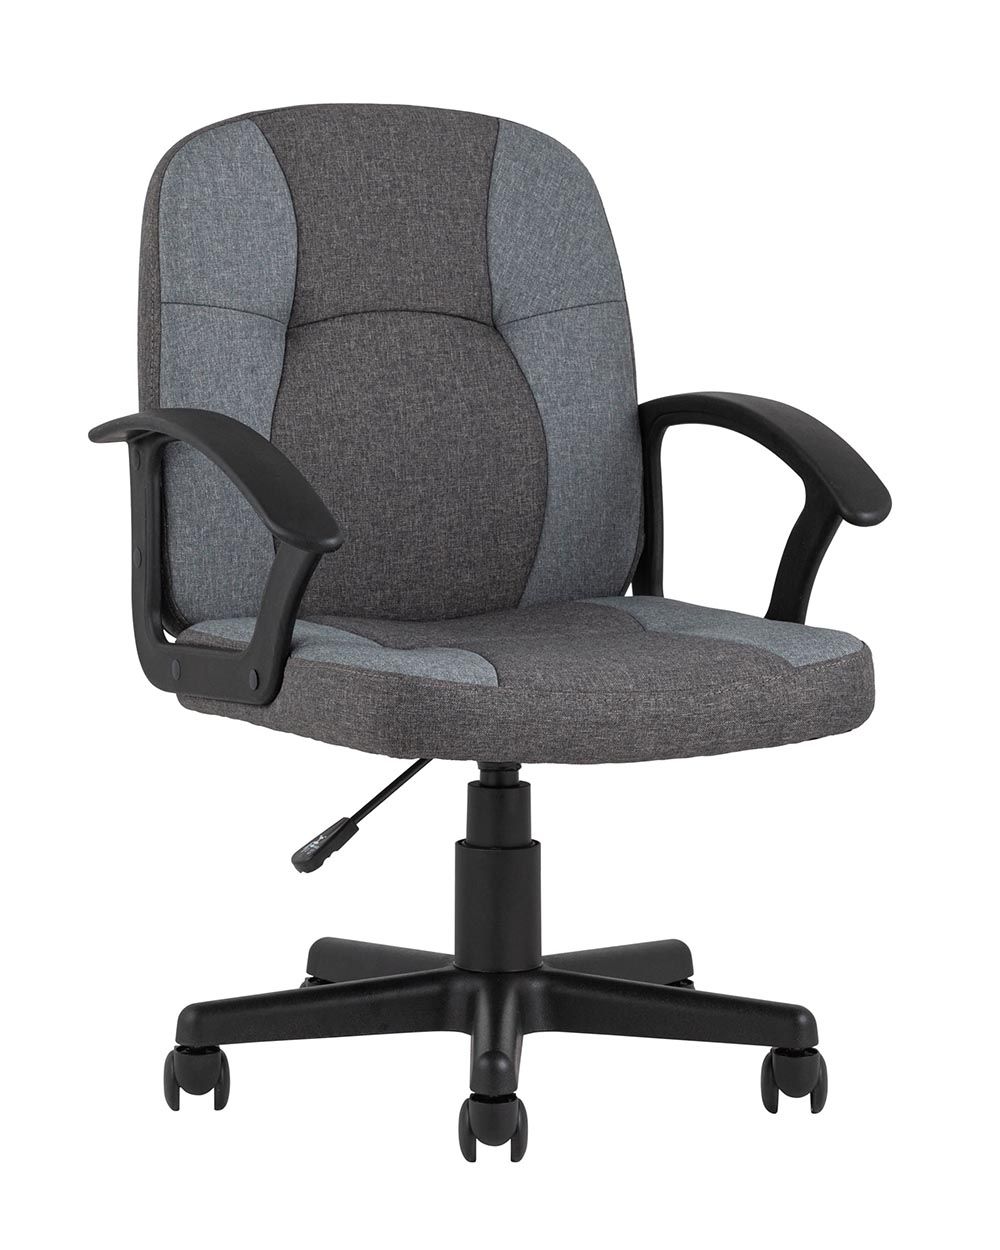 Компьютерное кресло TopChairs Comfort офисное серое в текстильной обивке с механизмом регулировки по высоте